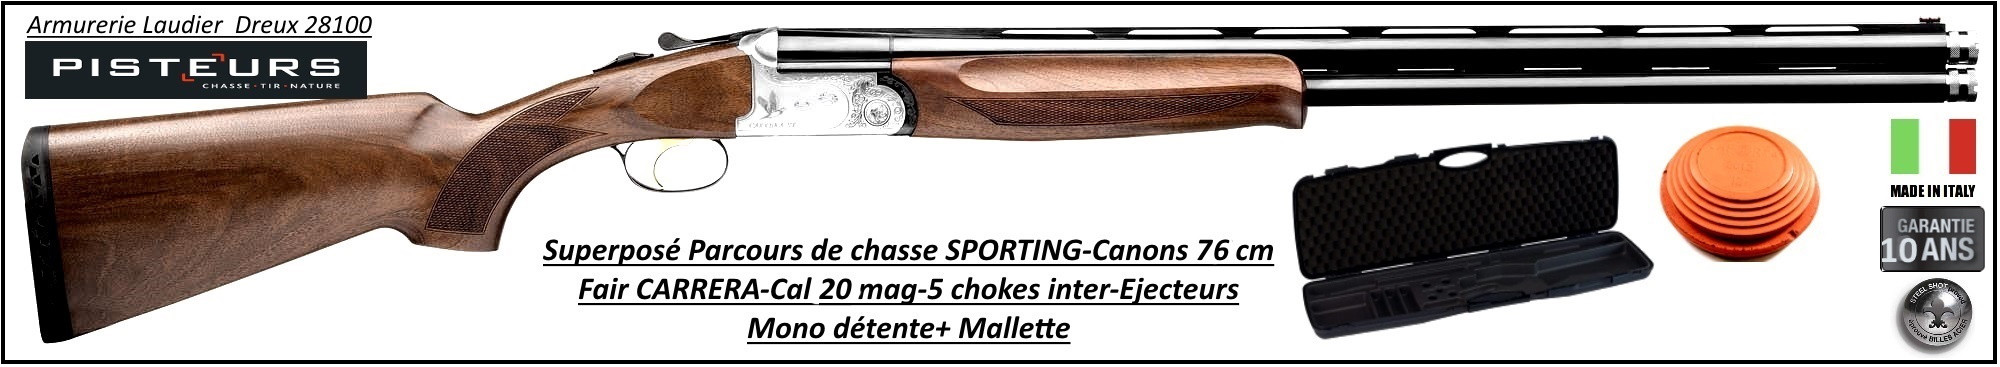 Superposé Fair Sporting Calibre 20 mag Canons 76 cm Parcours de chasse-Promotion-Ref DC48CI